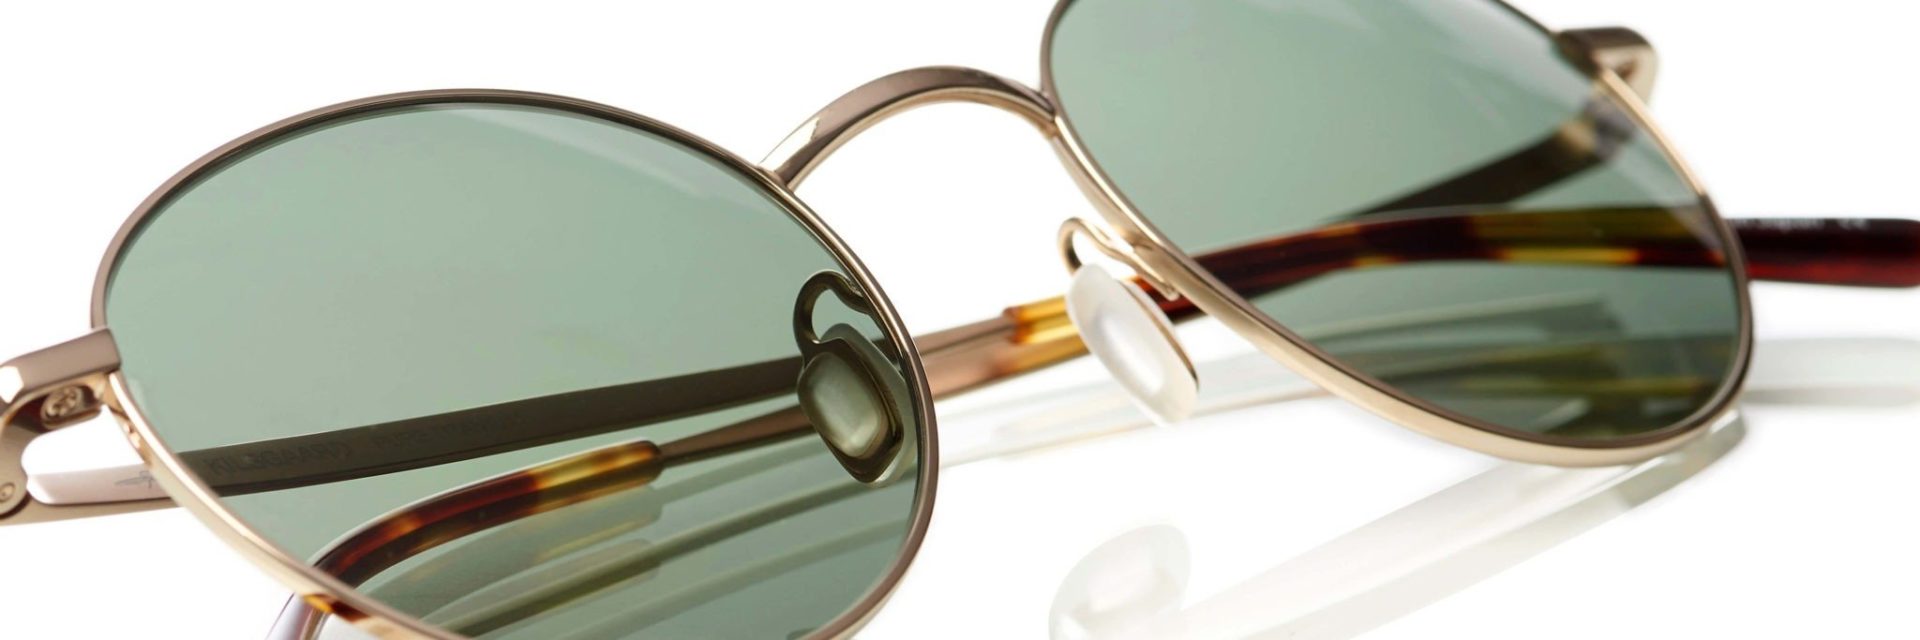 Optik Team - Solbrilleglas ikke bare solbrilleglas